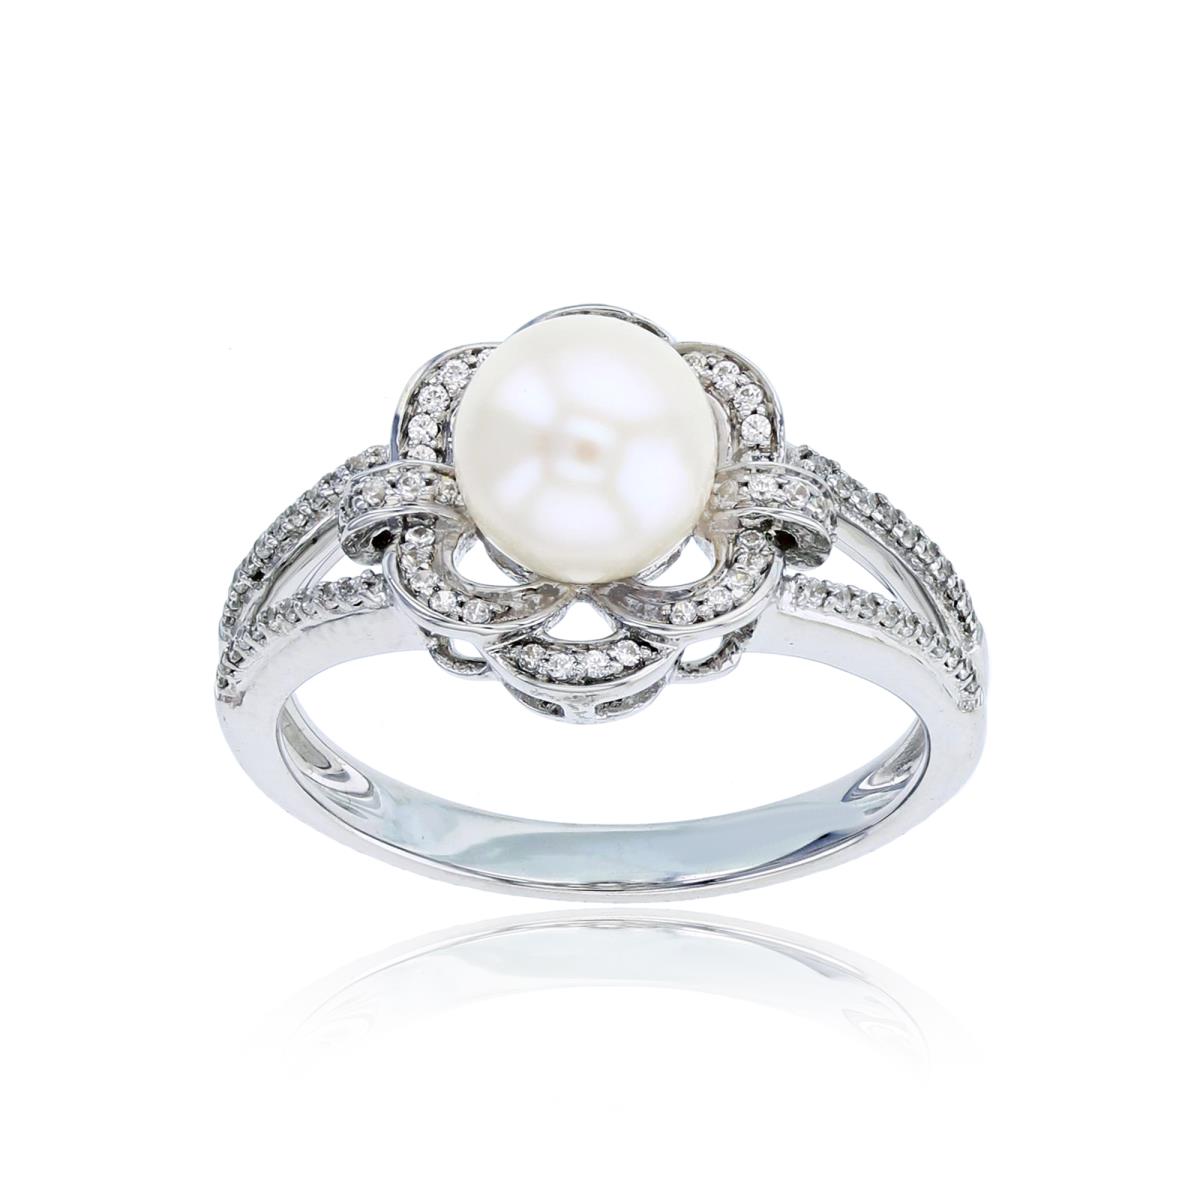 10K White Gold 0.16 CTTW Rnd Diamonds & 7mm Rnd Pearl Flower Ring